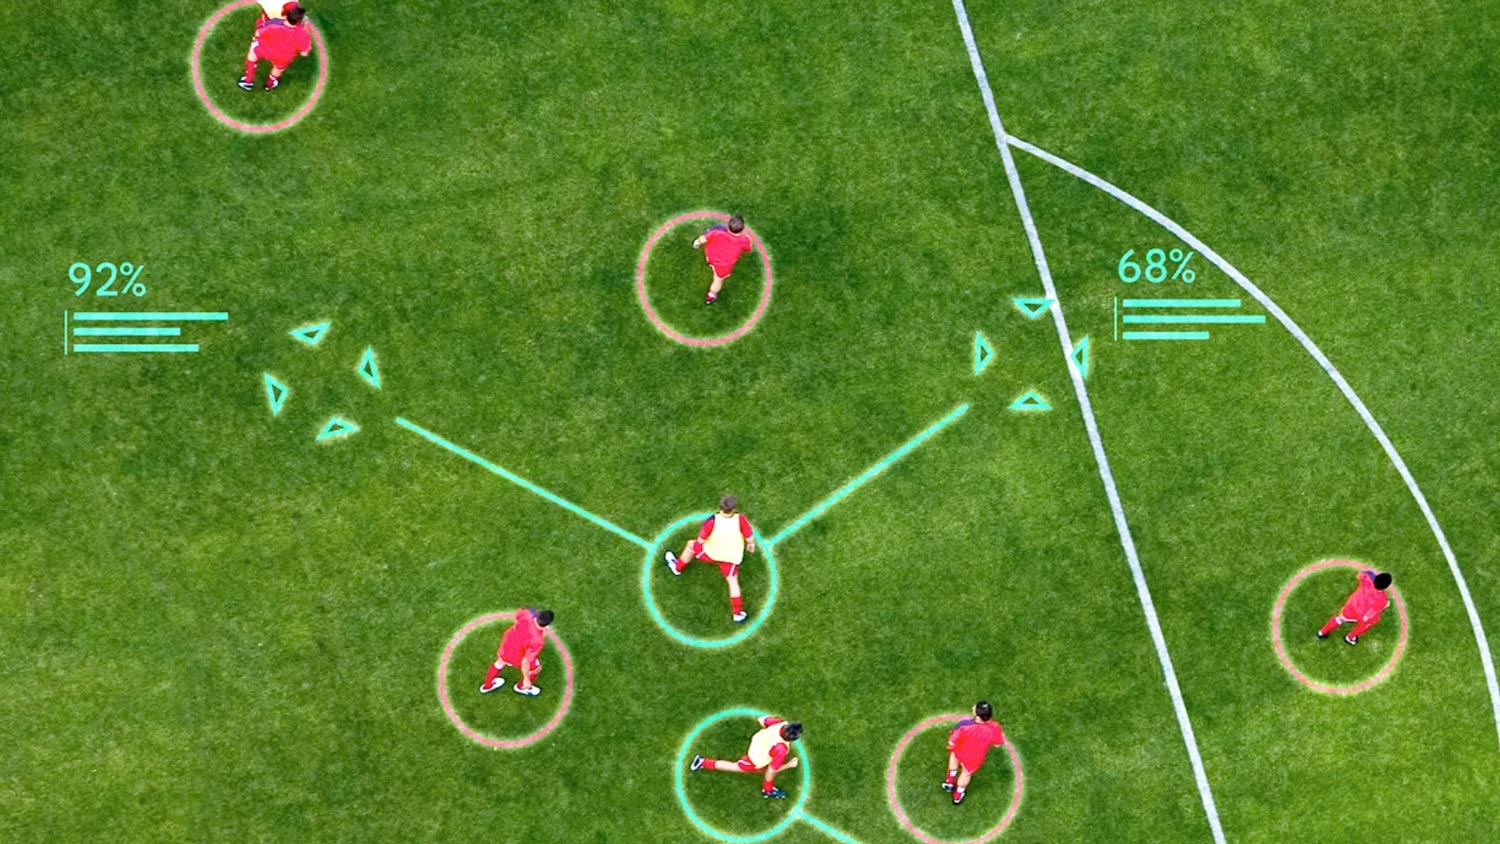 Google DeepMind Menghasilkan AI Taktik Bola Sepak Menggunakan Data Liverpool FC